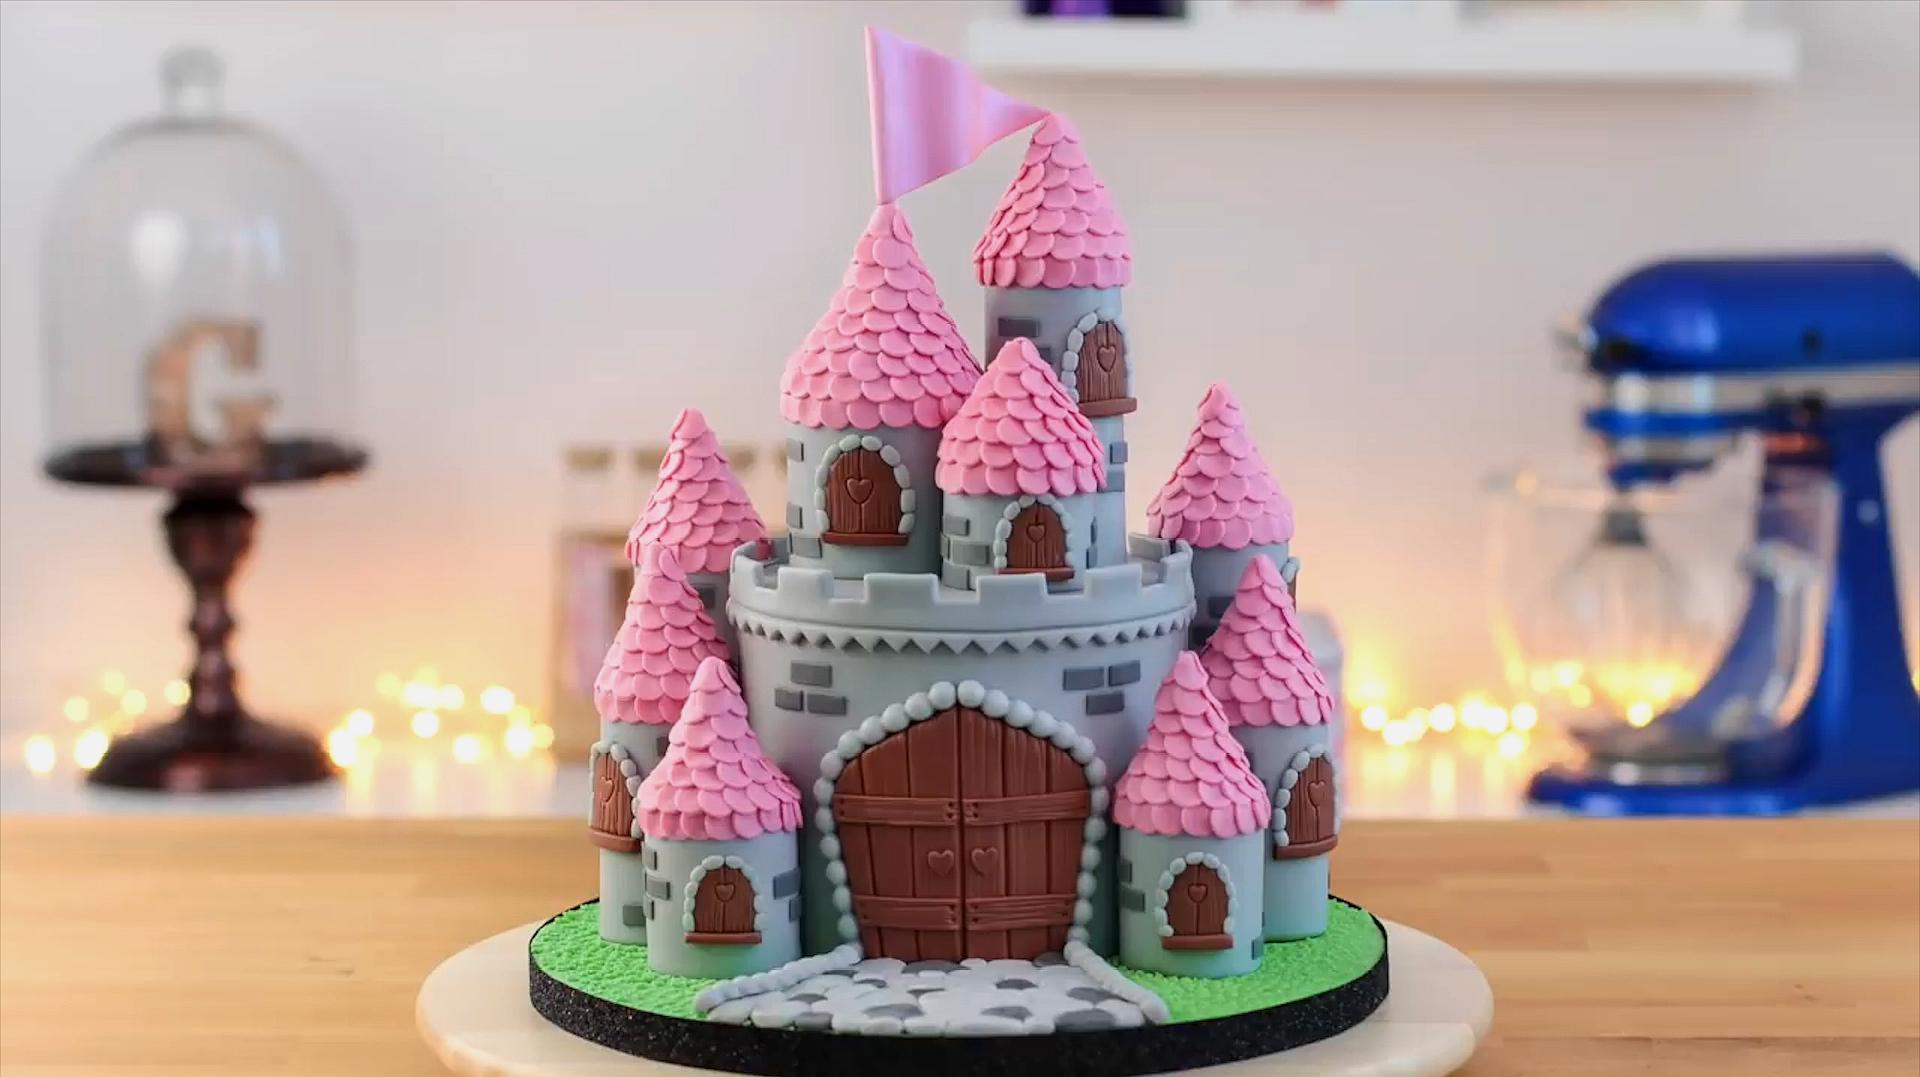 用蛋糕做的粉色城堡你见过吗?简单有趣,猜猜里面住的是哪位公主